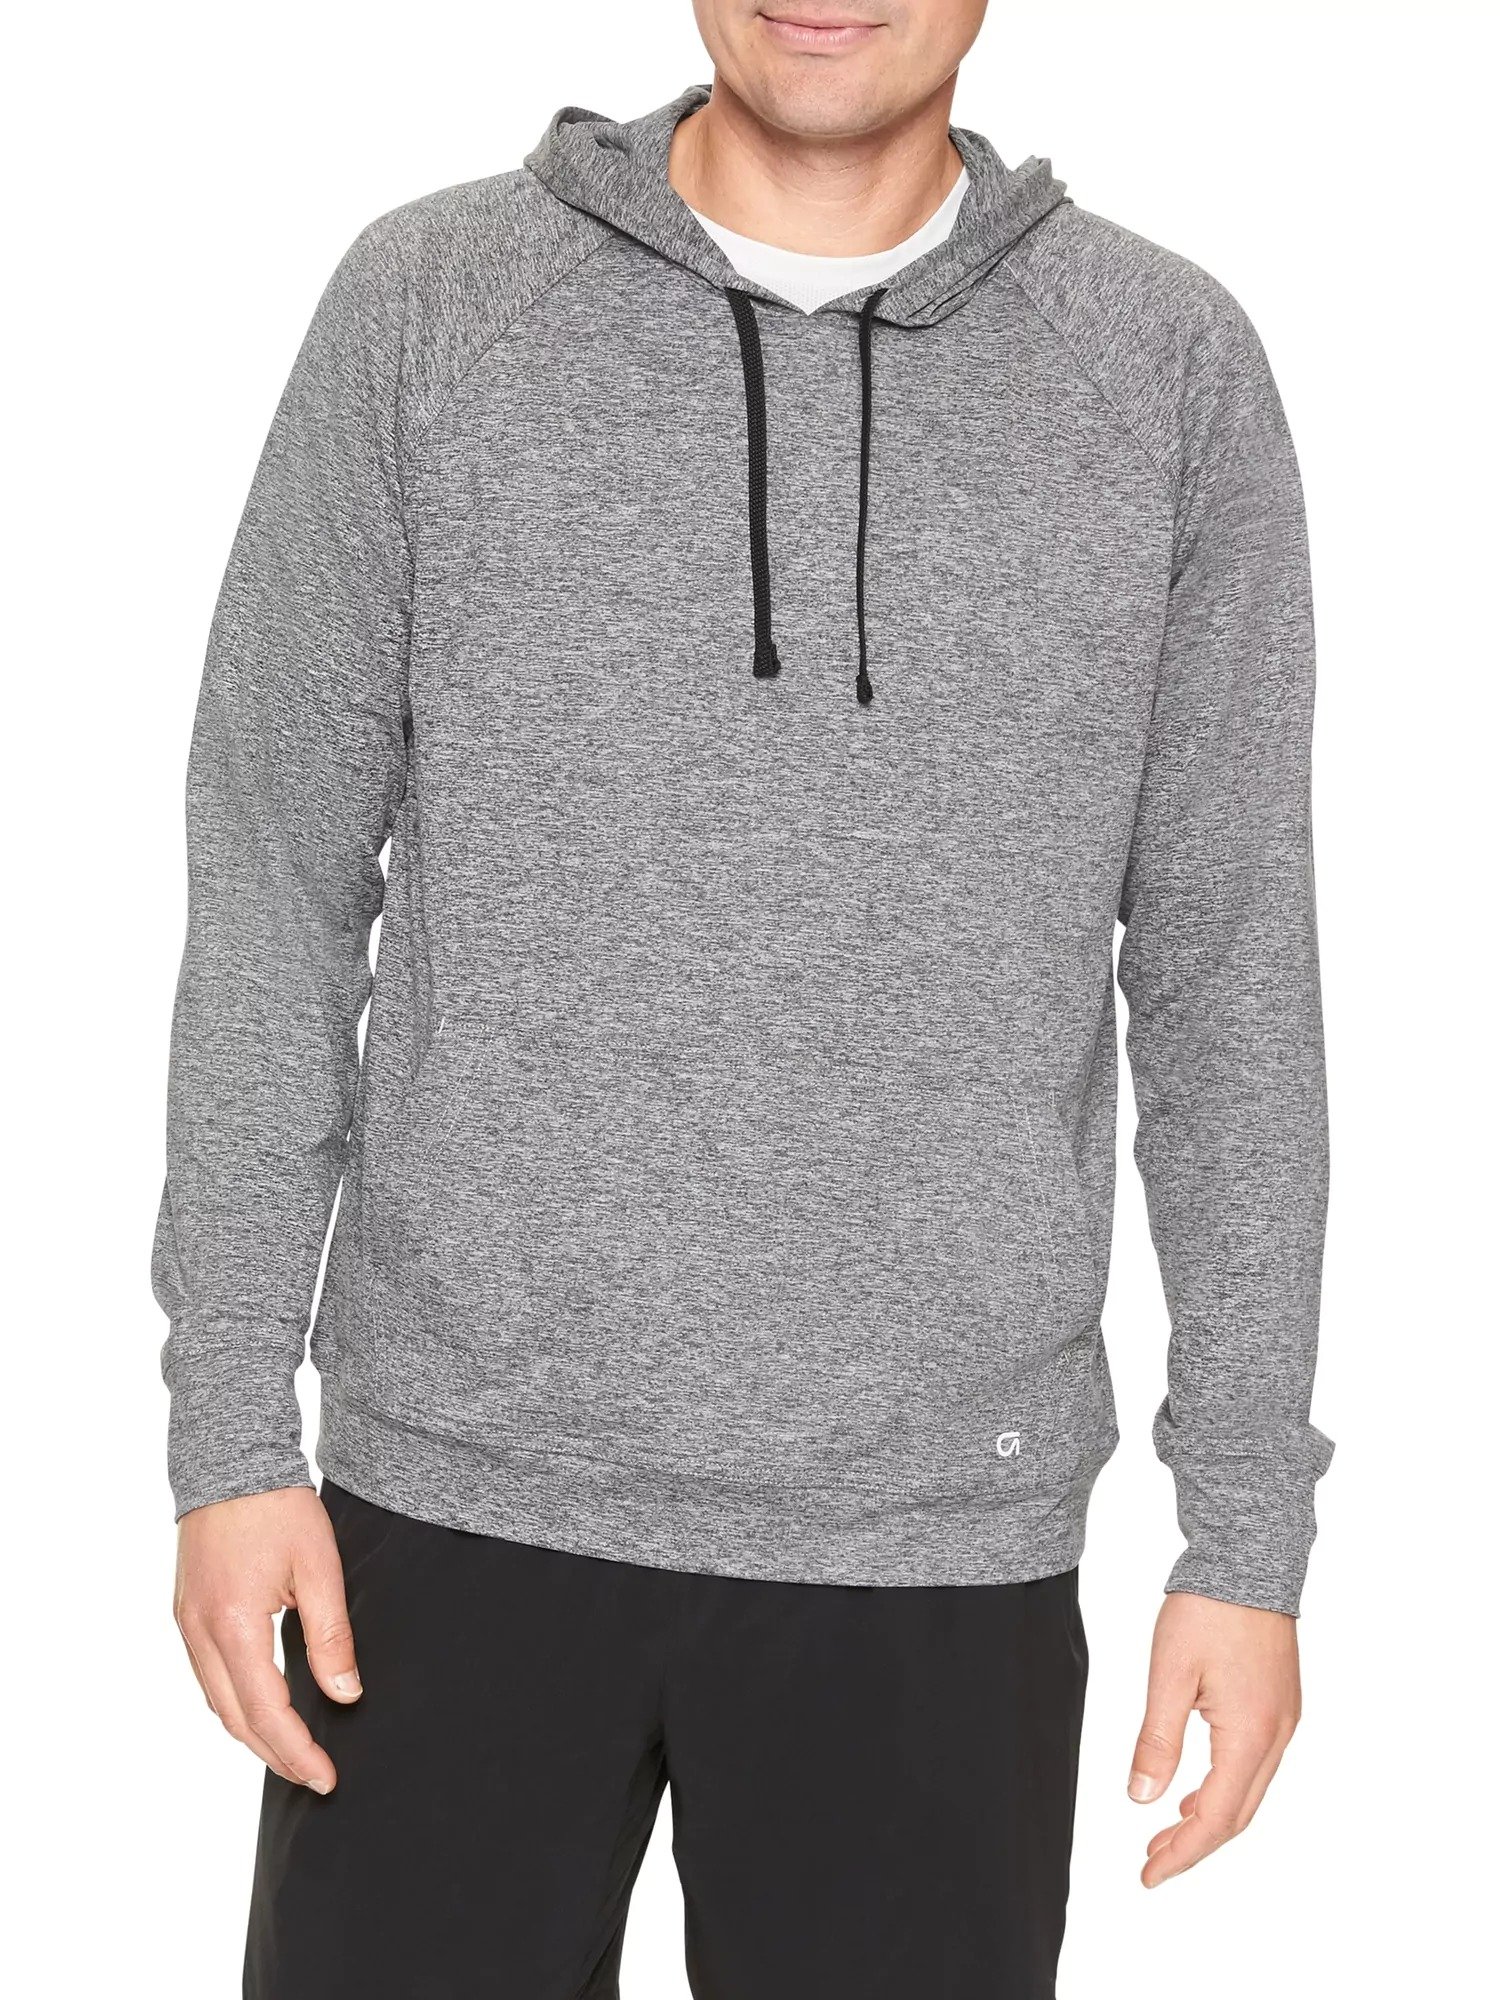 Kapüşonlu jarse sweatshirt product image